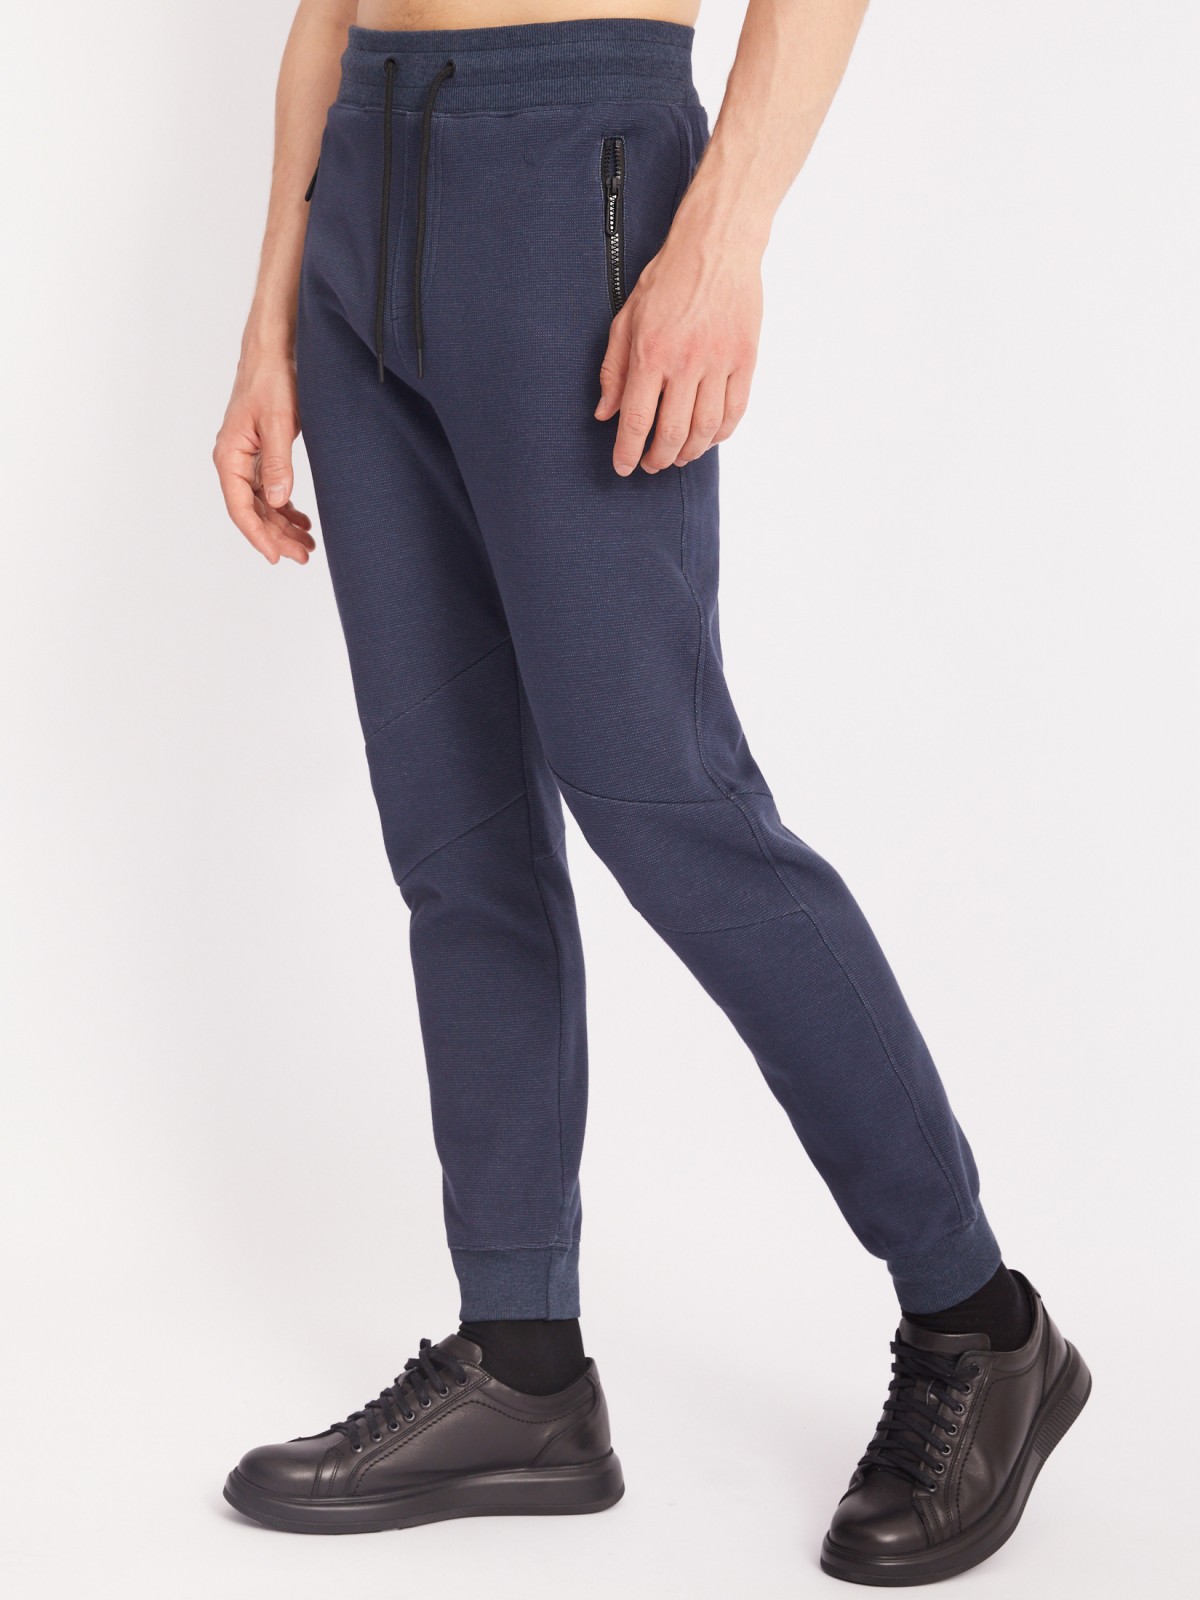 Трикотажные брюки-джоггеры в спортивном стиле zolla 213317679023, цвет синий, размер S - фото 3